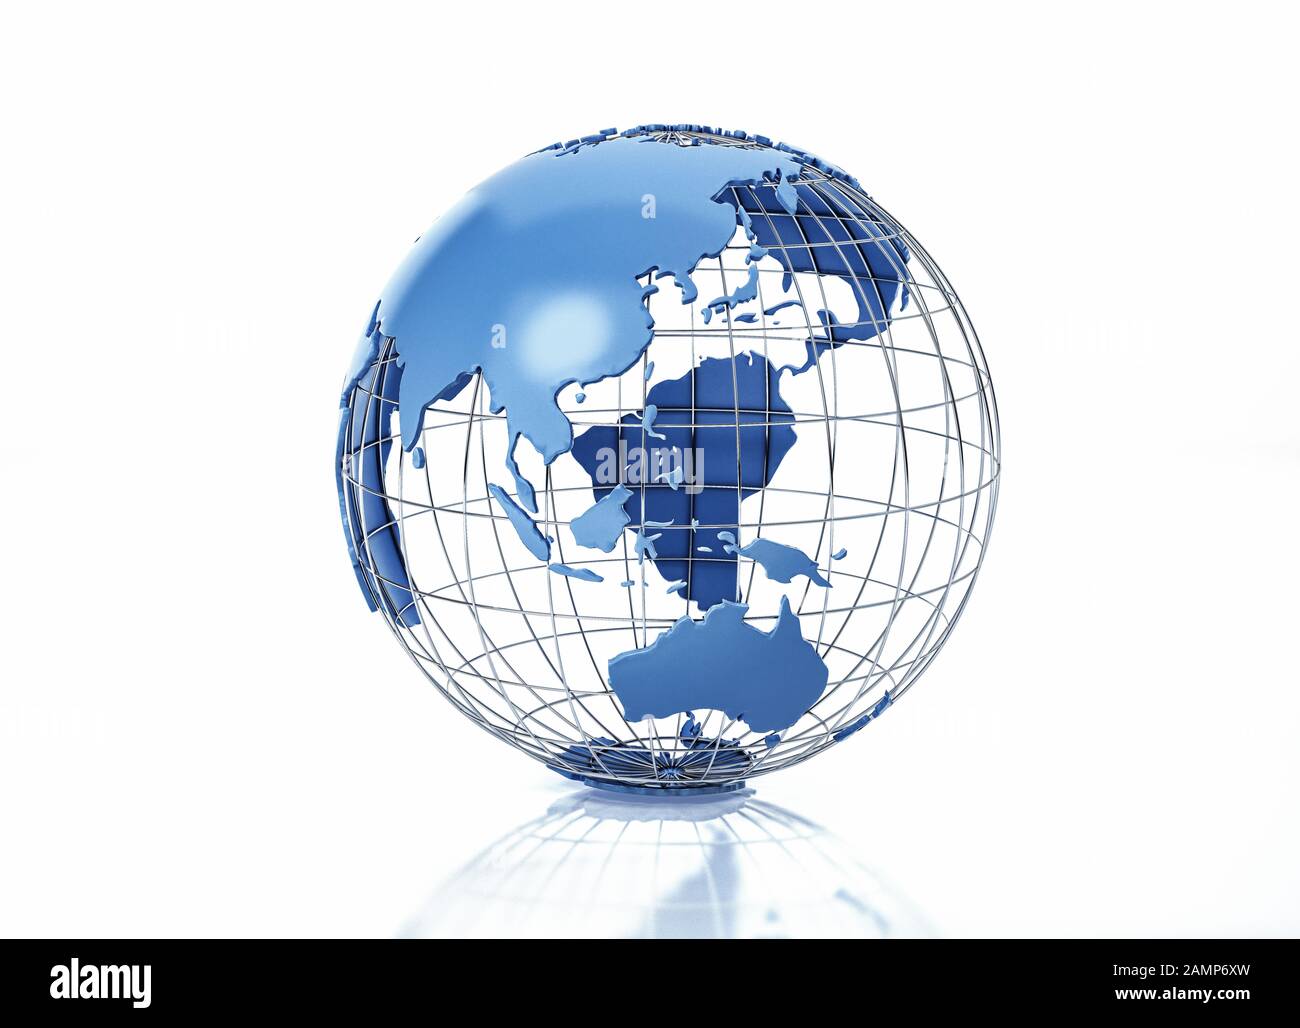 Globe terrestre stylisé avec grille métallique. Vue sur l'Océanie. Sur fond blanc avec une certaine réflexion sur la surface. Banque D'Images